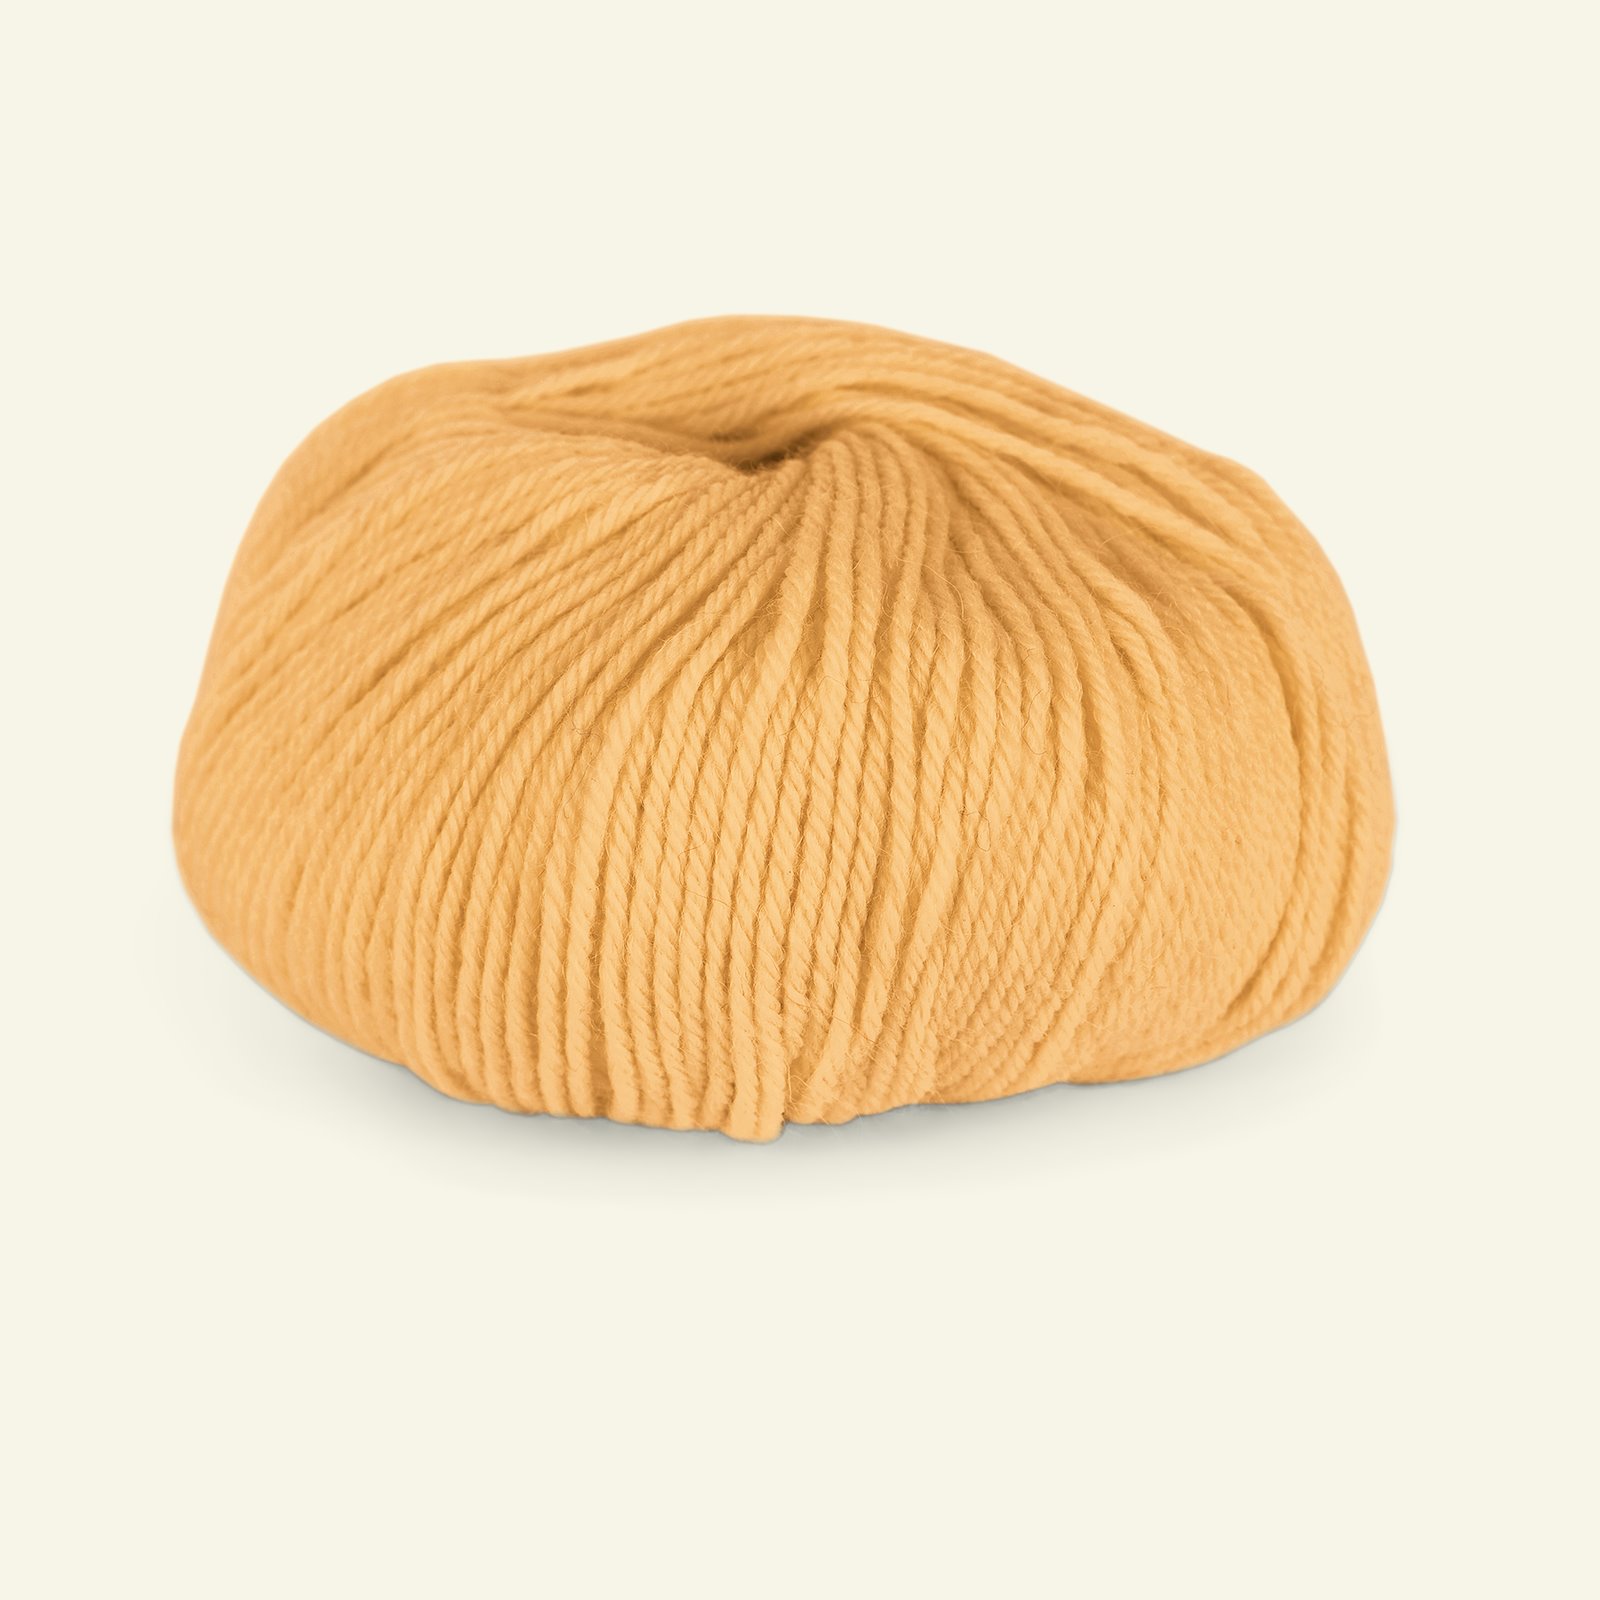 Du Store Alpakka, alpaca merino mixed yarn "Sterk", warm yellow (855) 90000679_pack_b